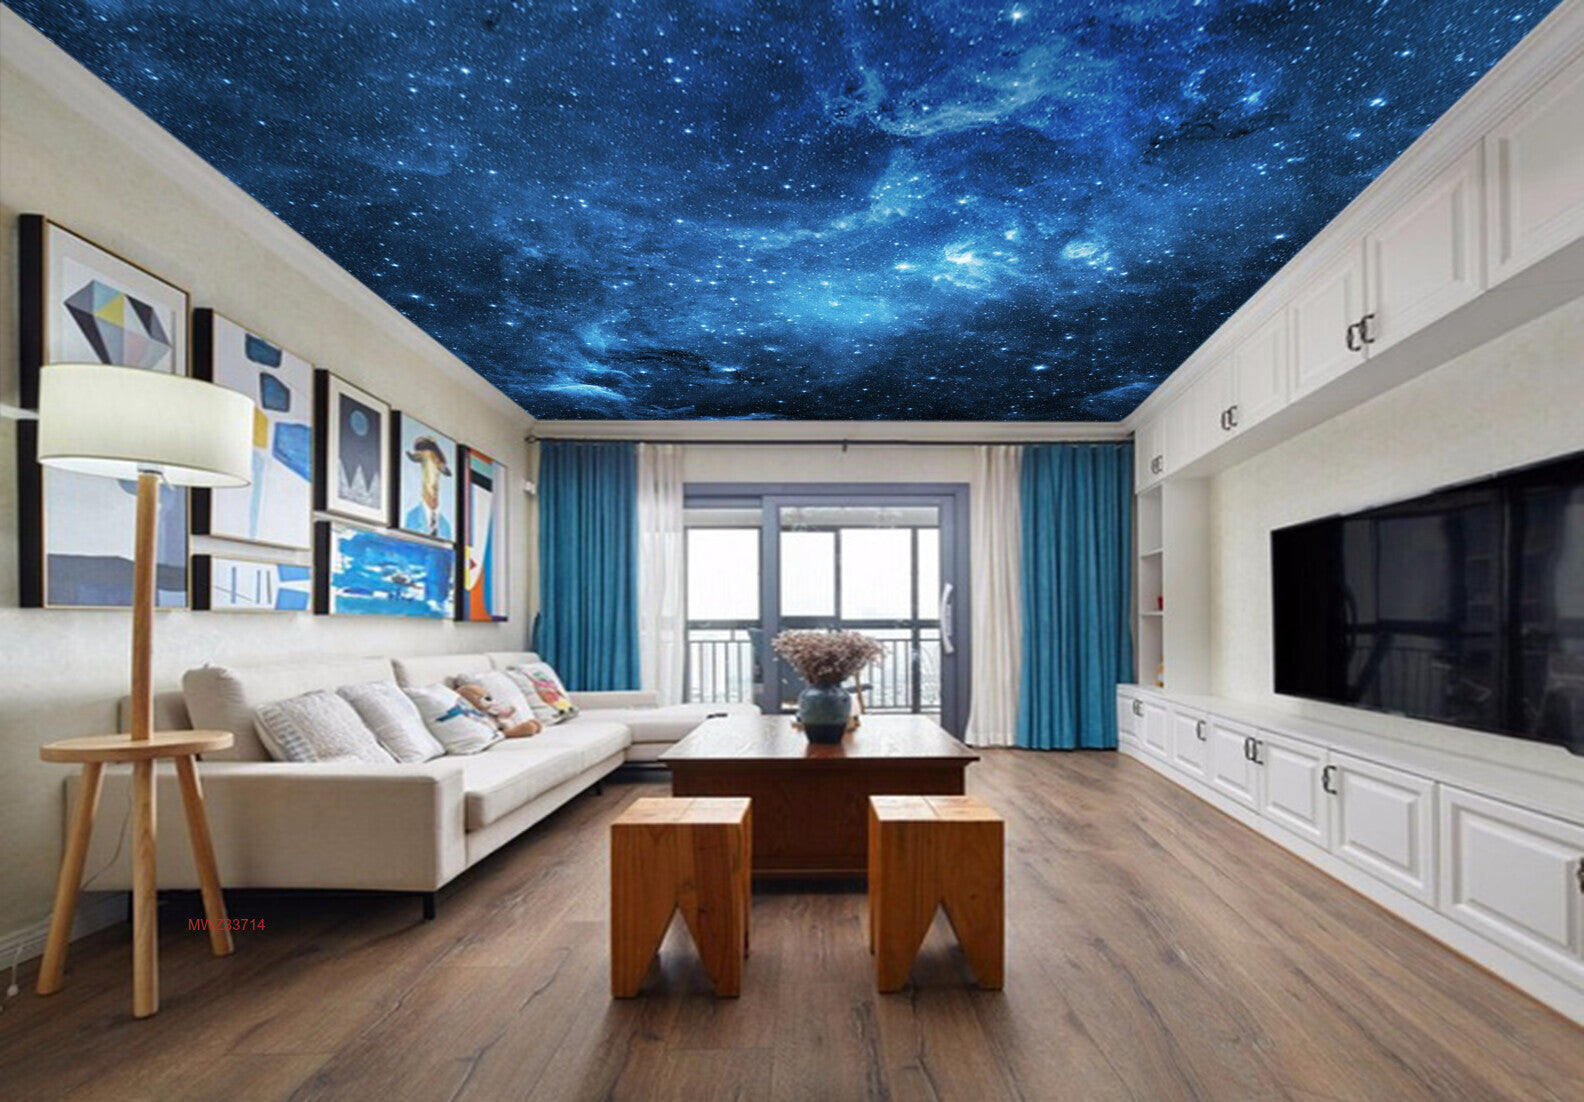 Avikalp MWZ3371 Blue Black Galaxy Stars HD Wallpaper for Ceiling